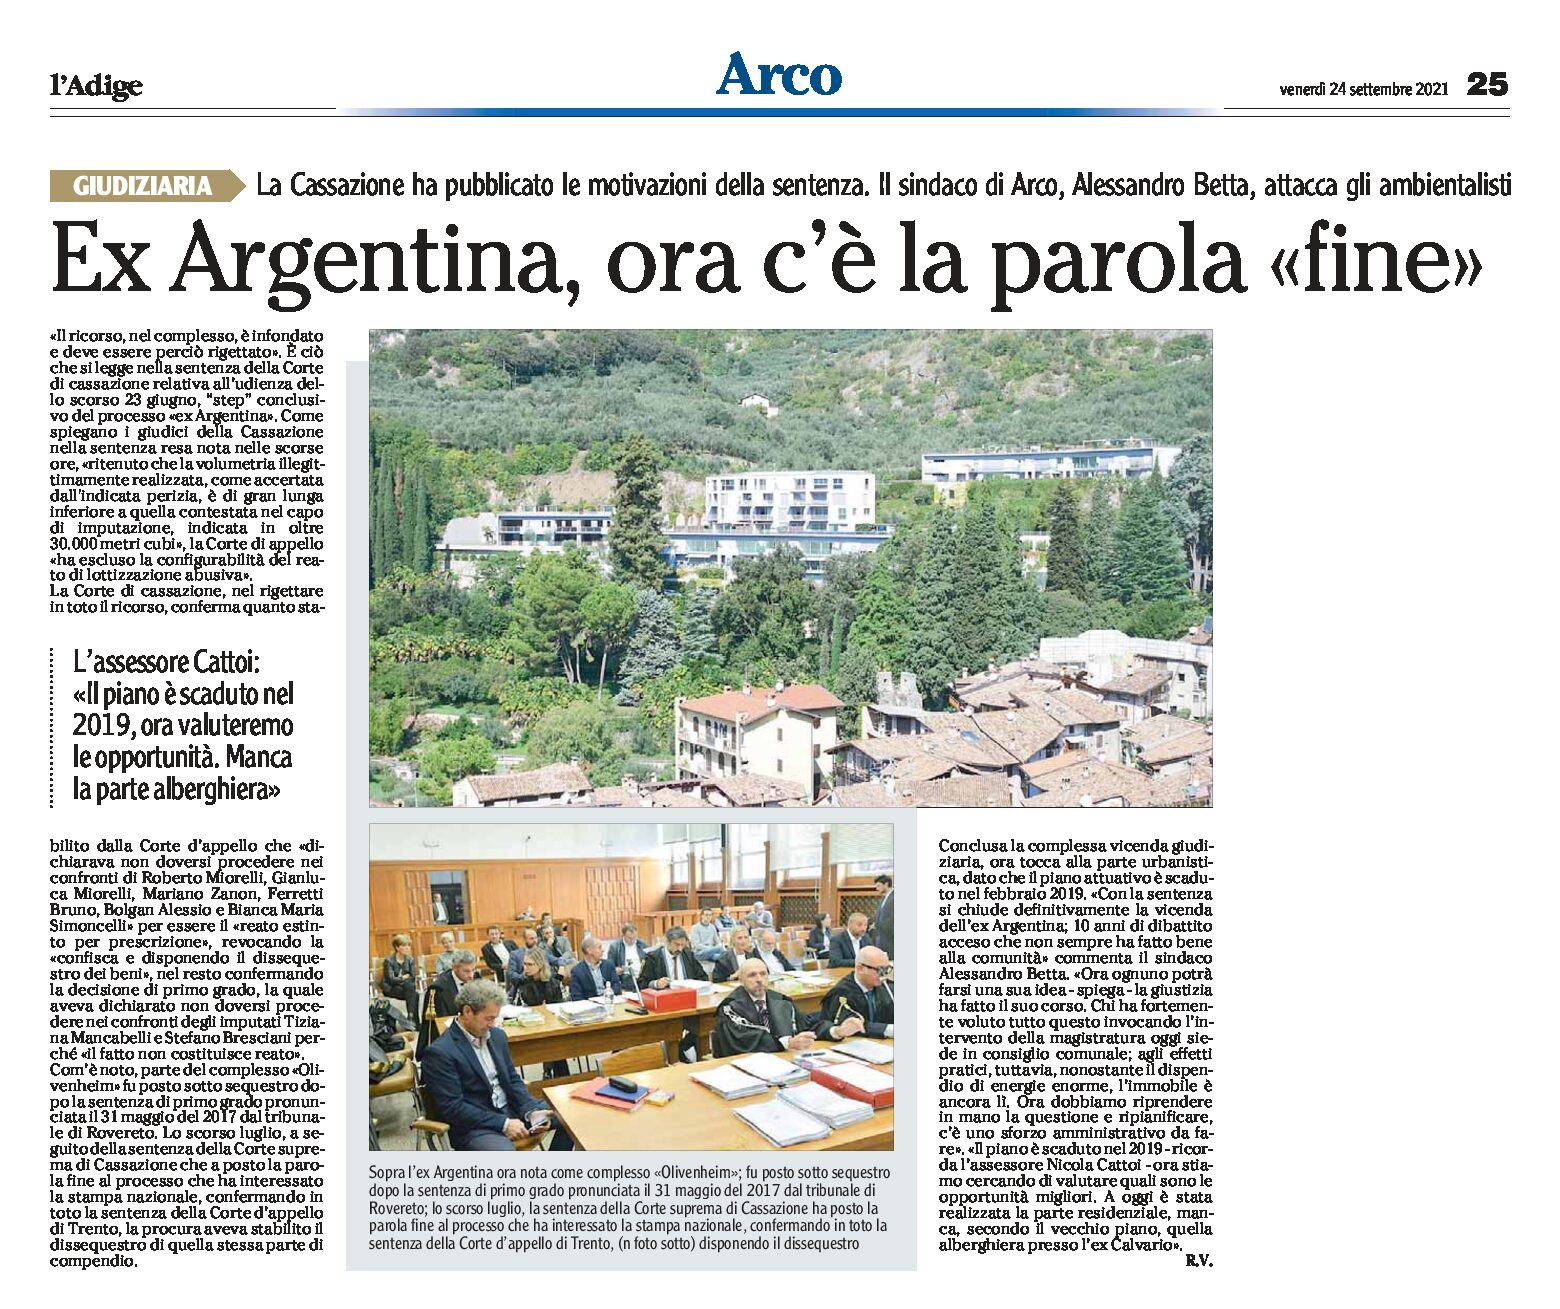 Arco, ex Argentina: reato estinto per prescrizione